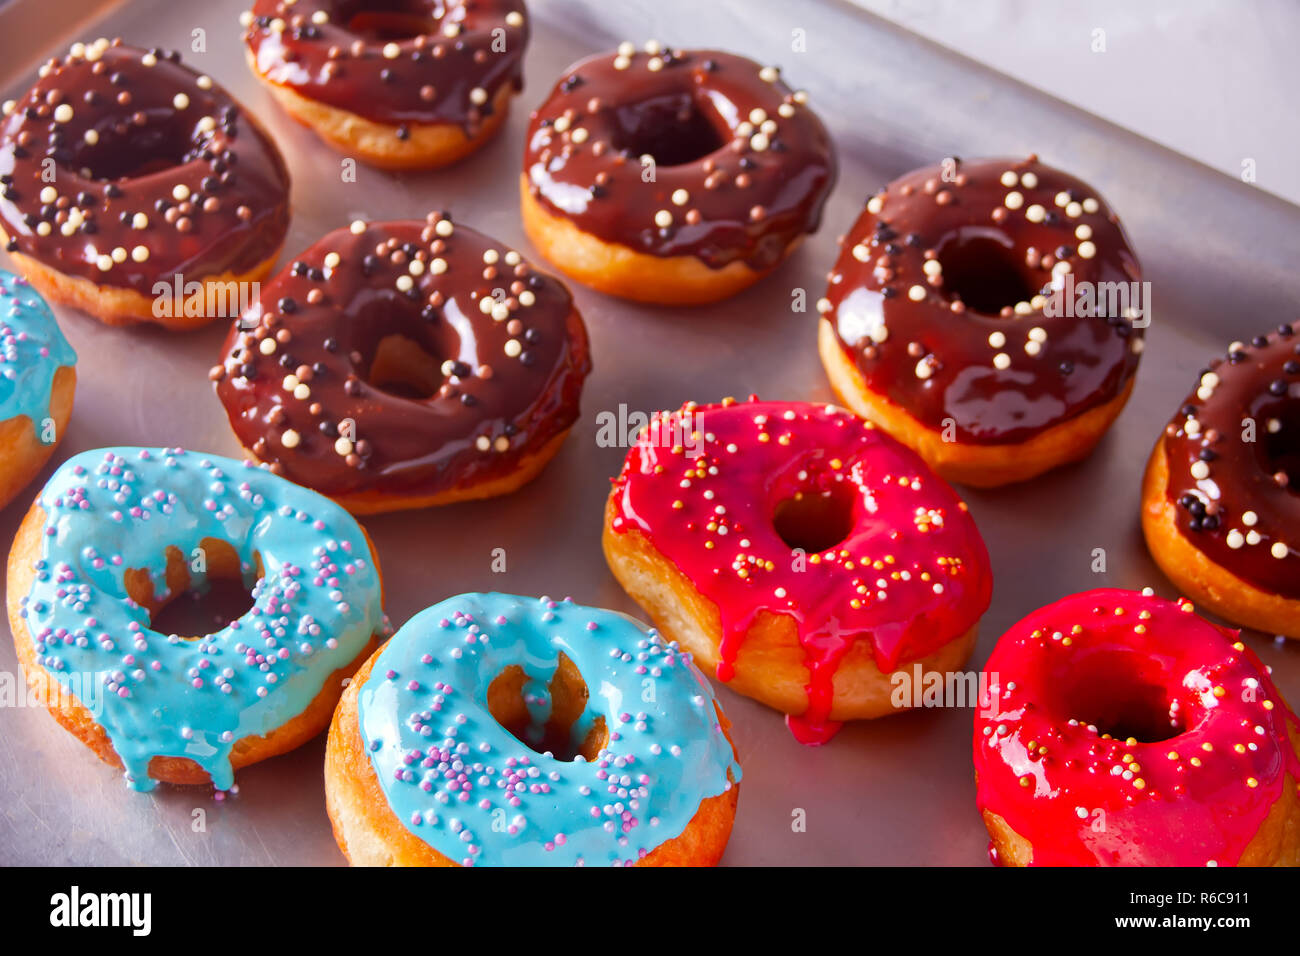 Frische bunte Rote. Braun und Blau Schokolade Donuts auf dem Backblech  Stockfotografie - Alamy